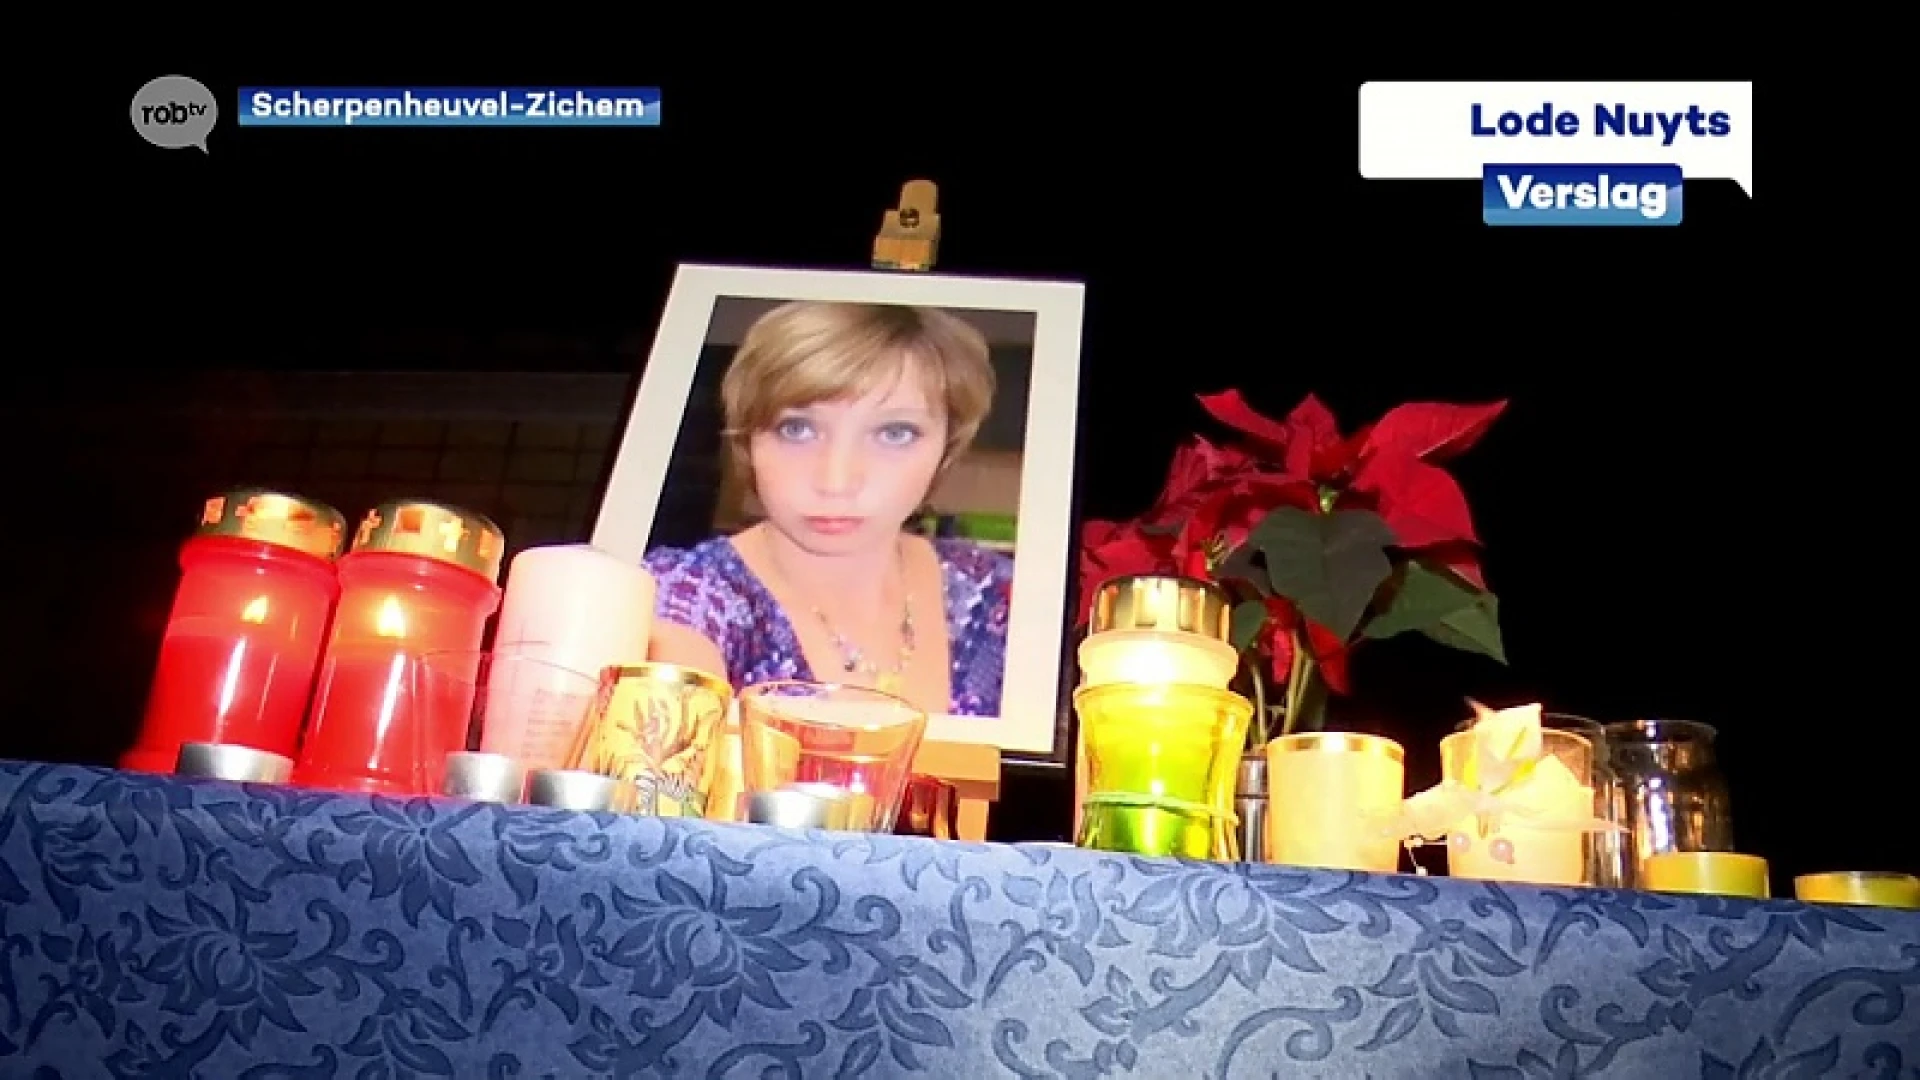 Testelt herdenkt vermoorde vrouw (40) met kaarsen en lichtjes aan woning